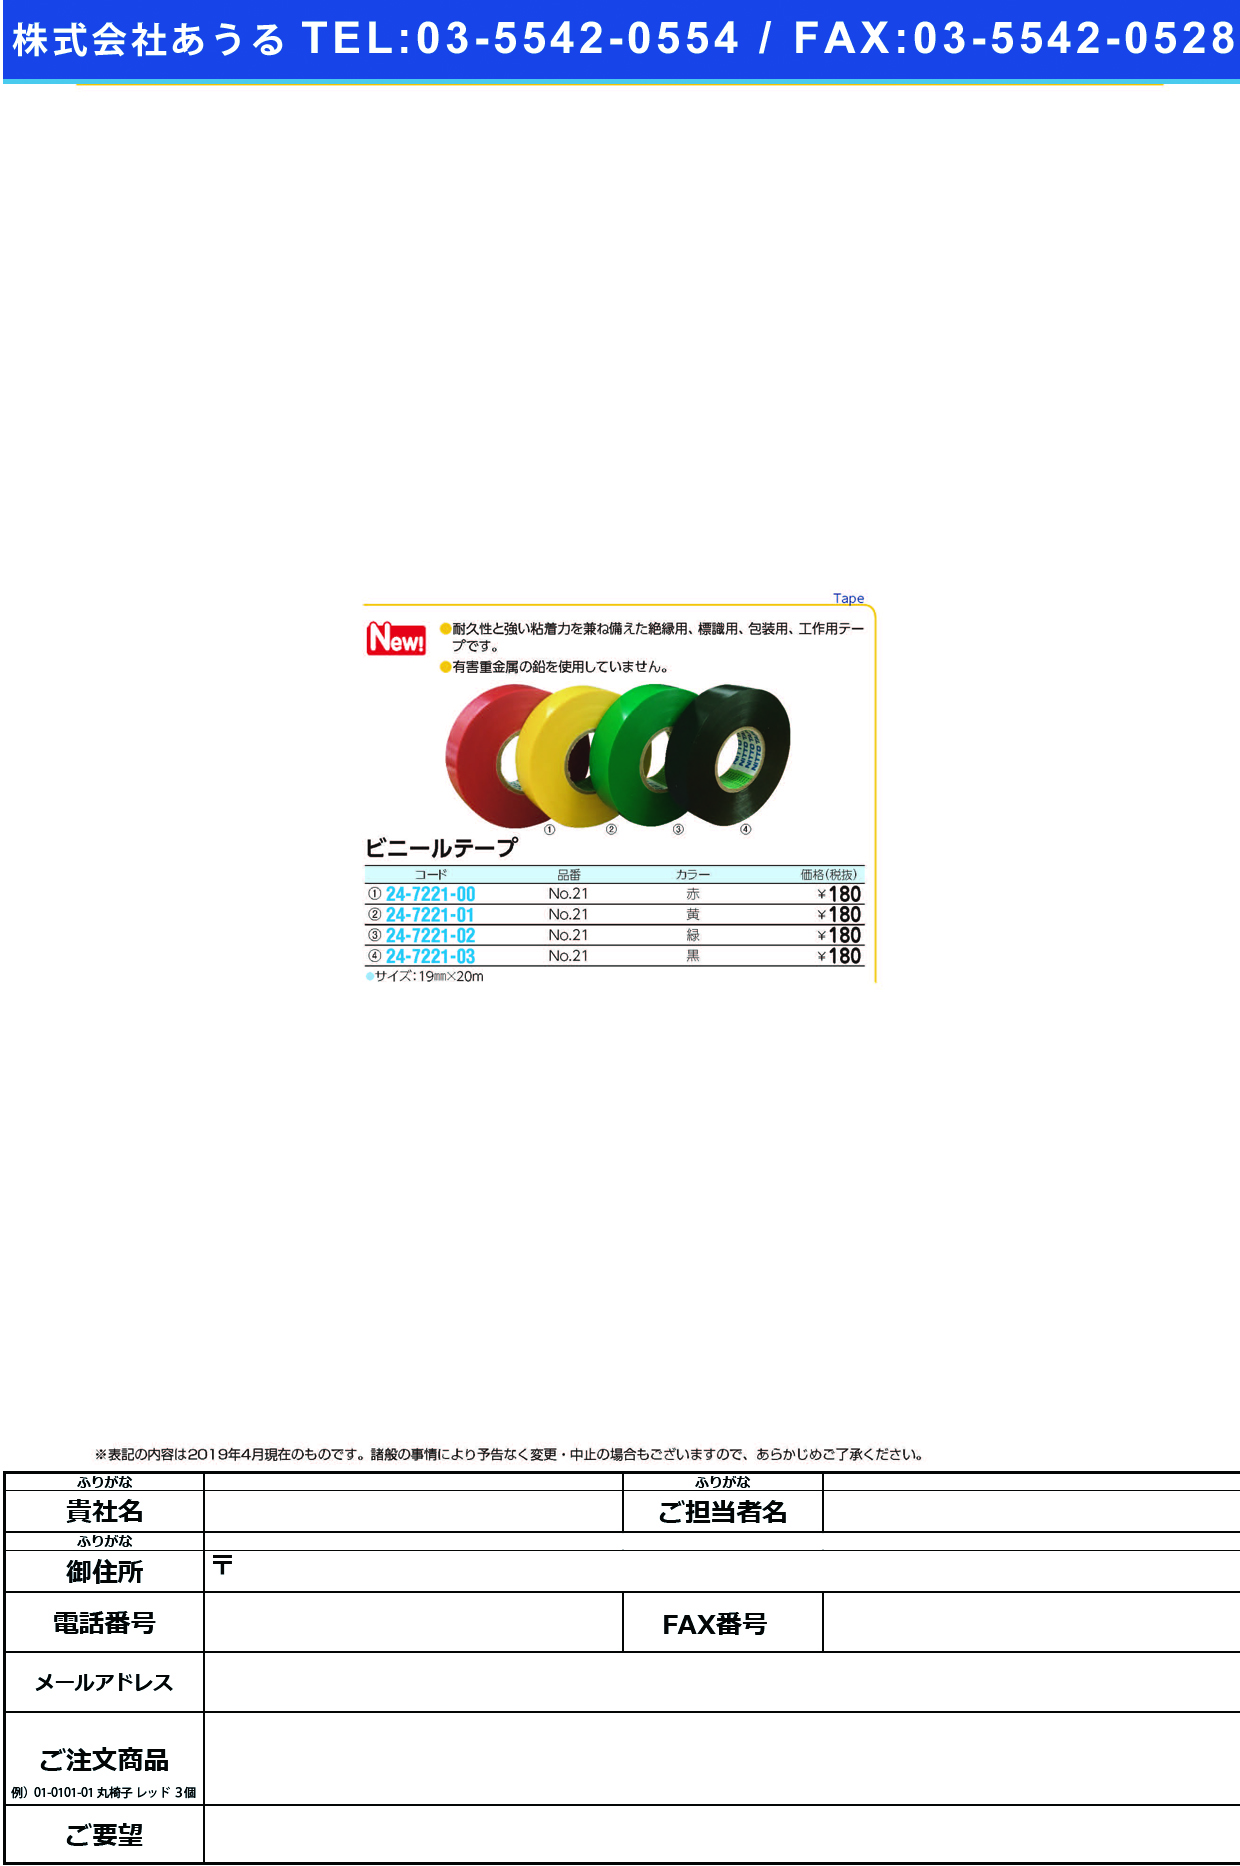 (24-7221-00)ビニールテープNO.21(ｱｶ)19MMX20M ﾋﾞﾆｰﾙﾃｰﾌﾟ(コクゴ)【1巻単位】【2019年カタログ商品】